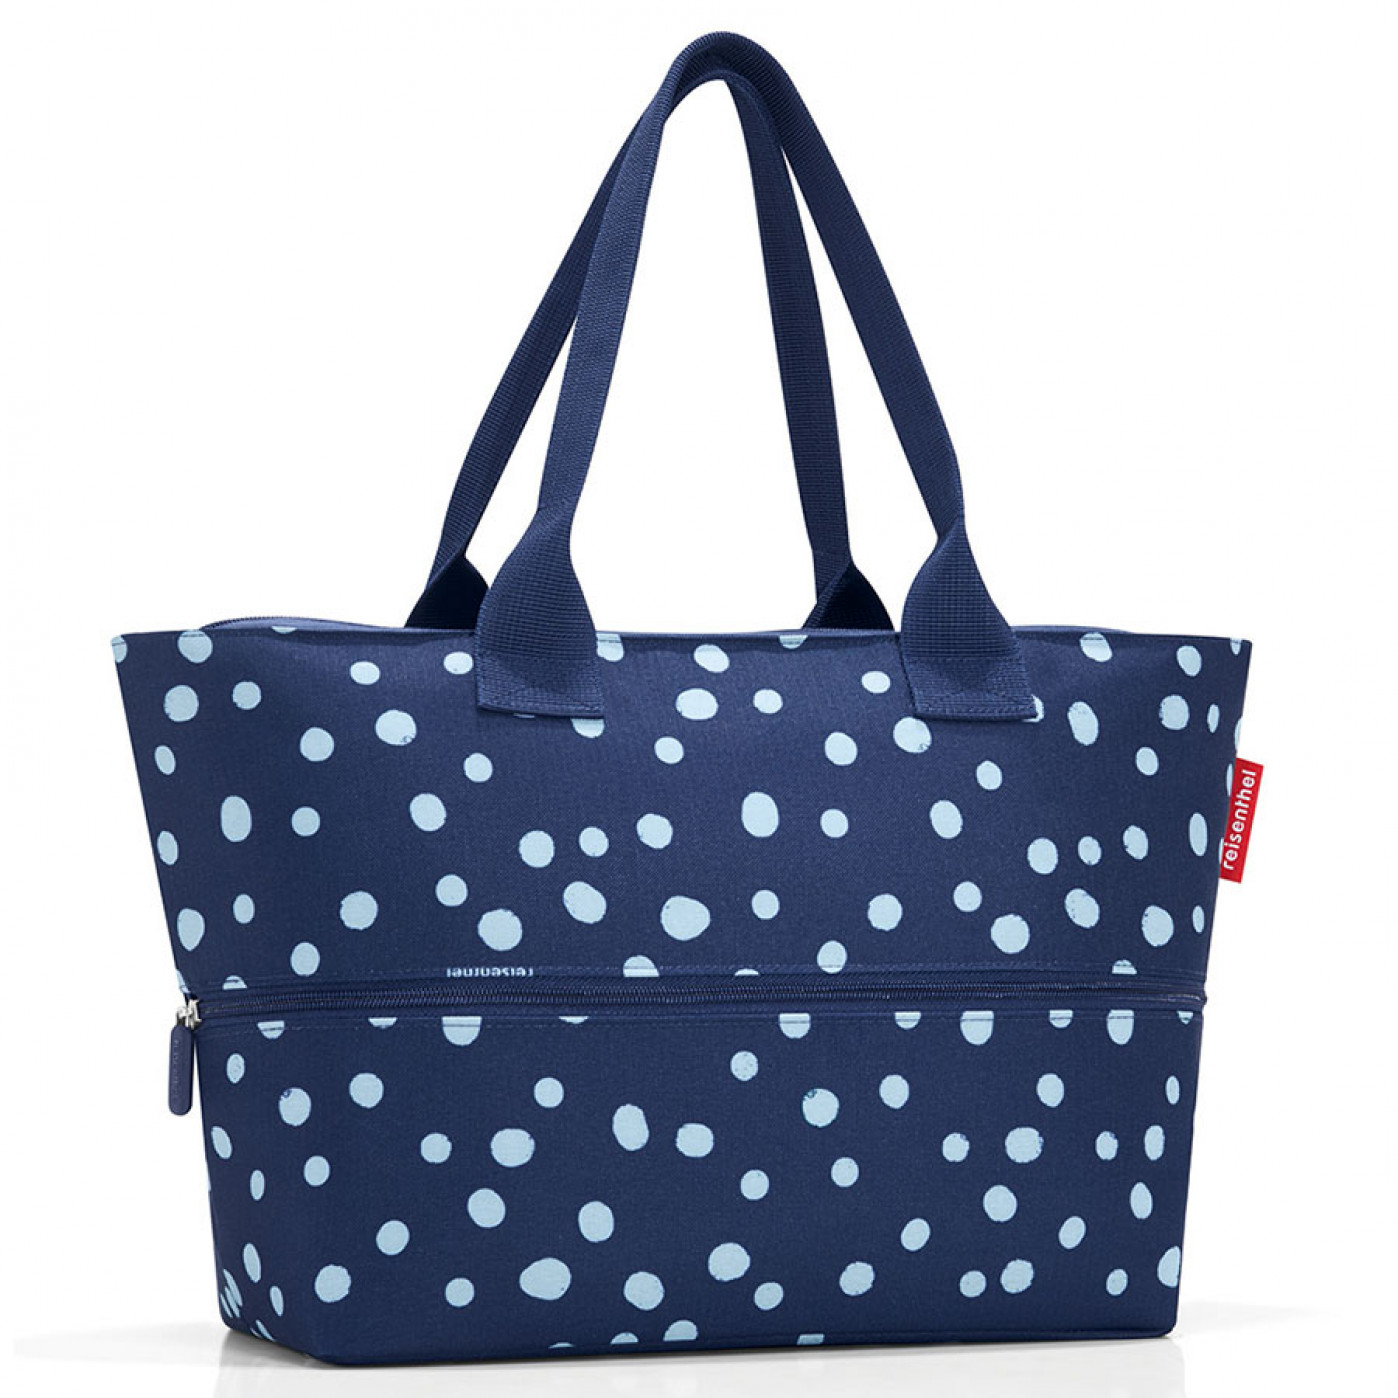 Увеличивающаяся сумка Shopper E1 Dots Navy